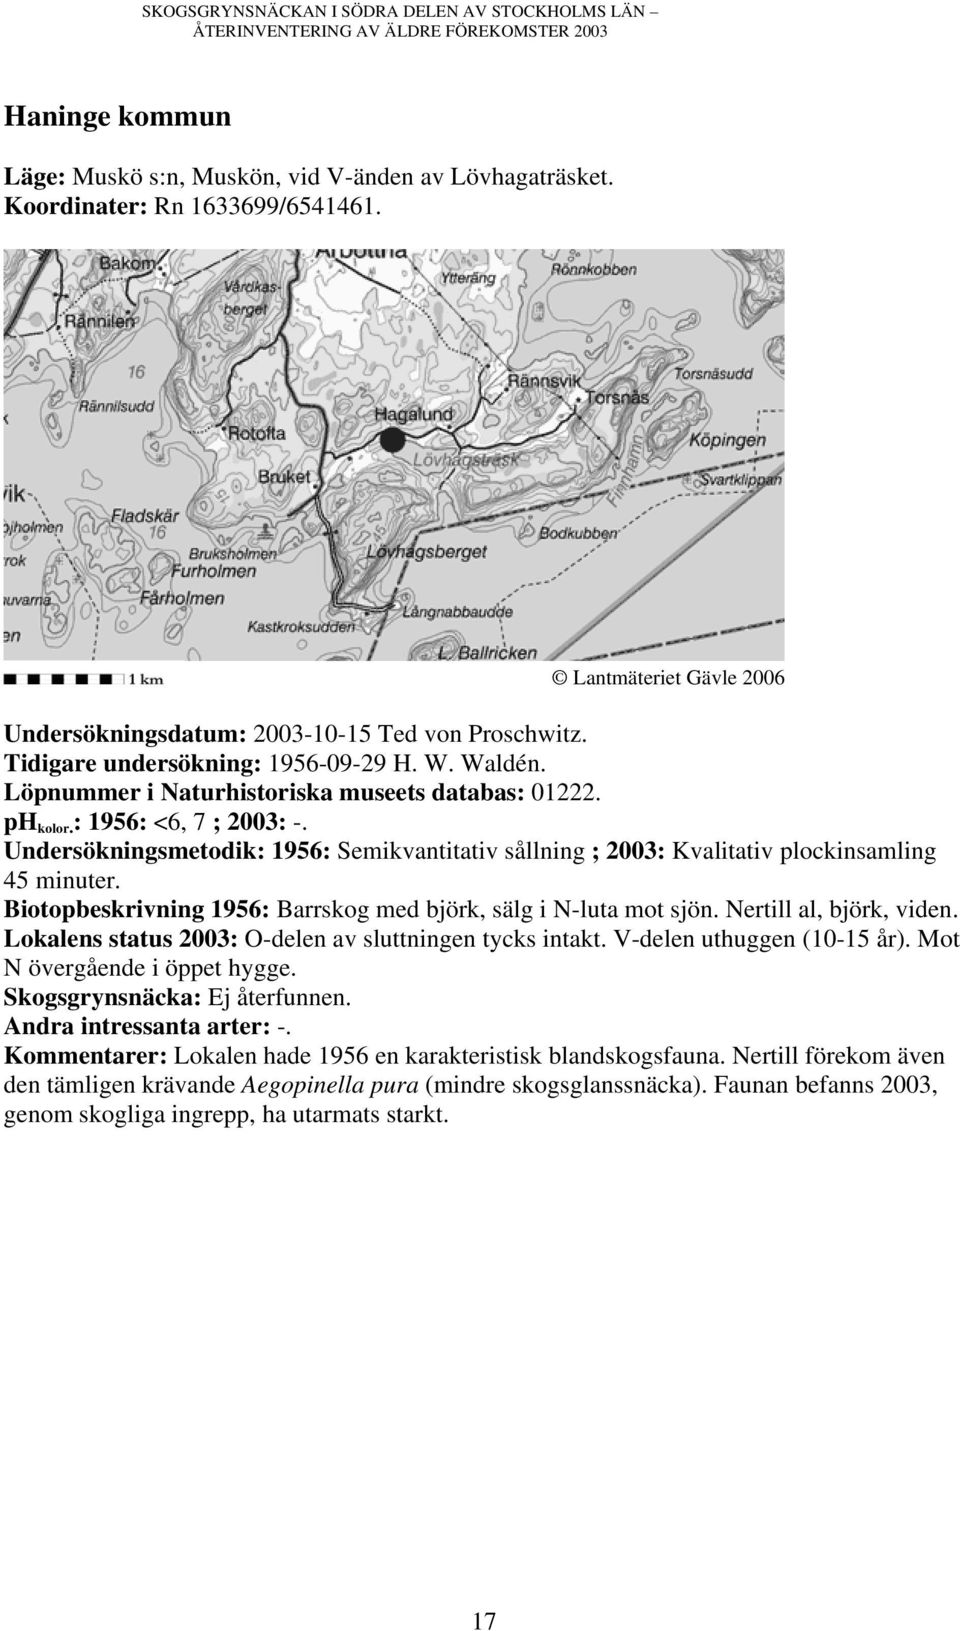 Undersökningsmetodik: 1956: Semikvantitativ sållning ; 2003: Kvalitativ plockinsamling Biotopbeskrivning 1956: Barrskog med björk, sälg i N-luta mot sjön. Nertill al, björk, viden.